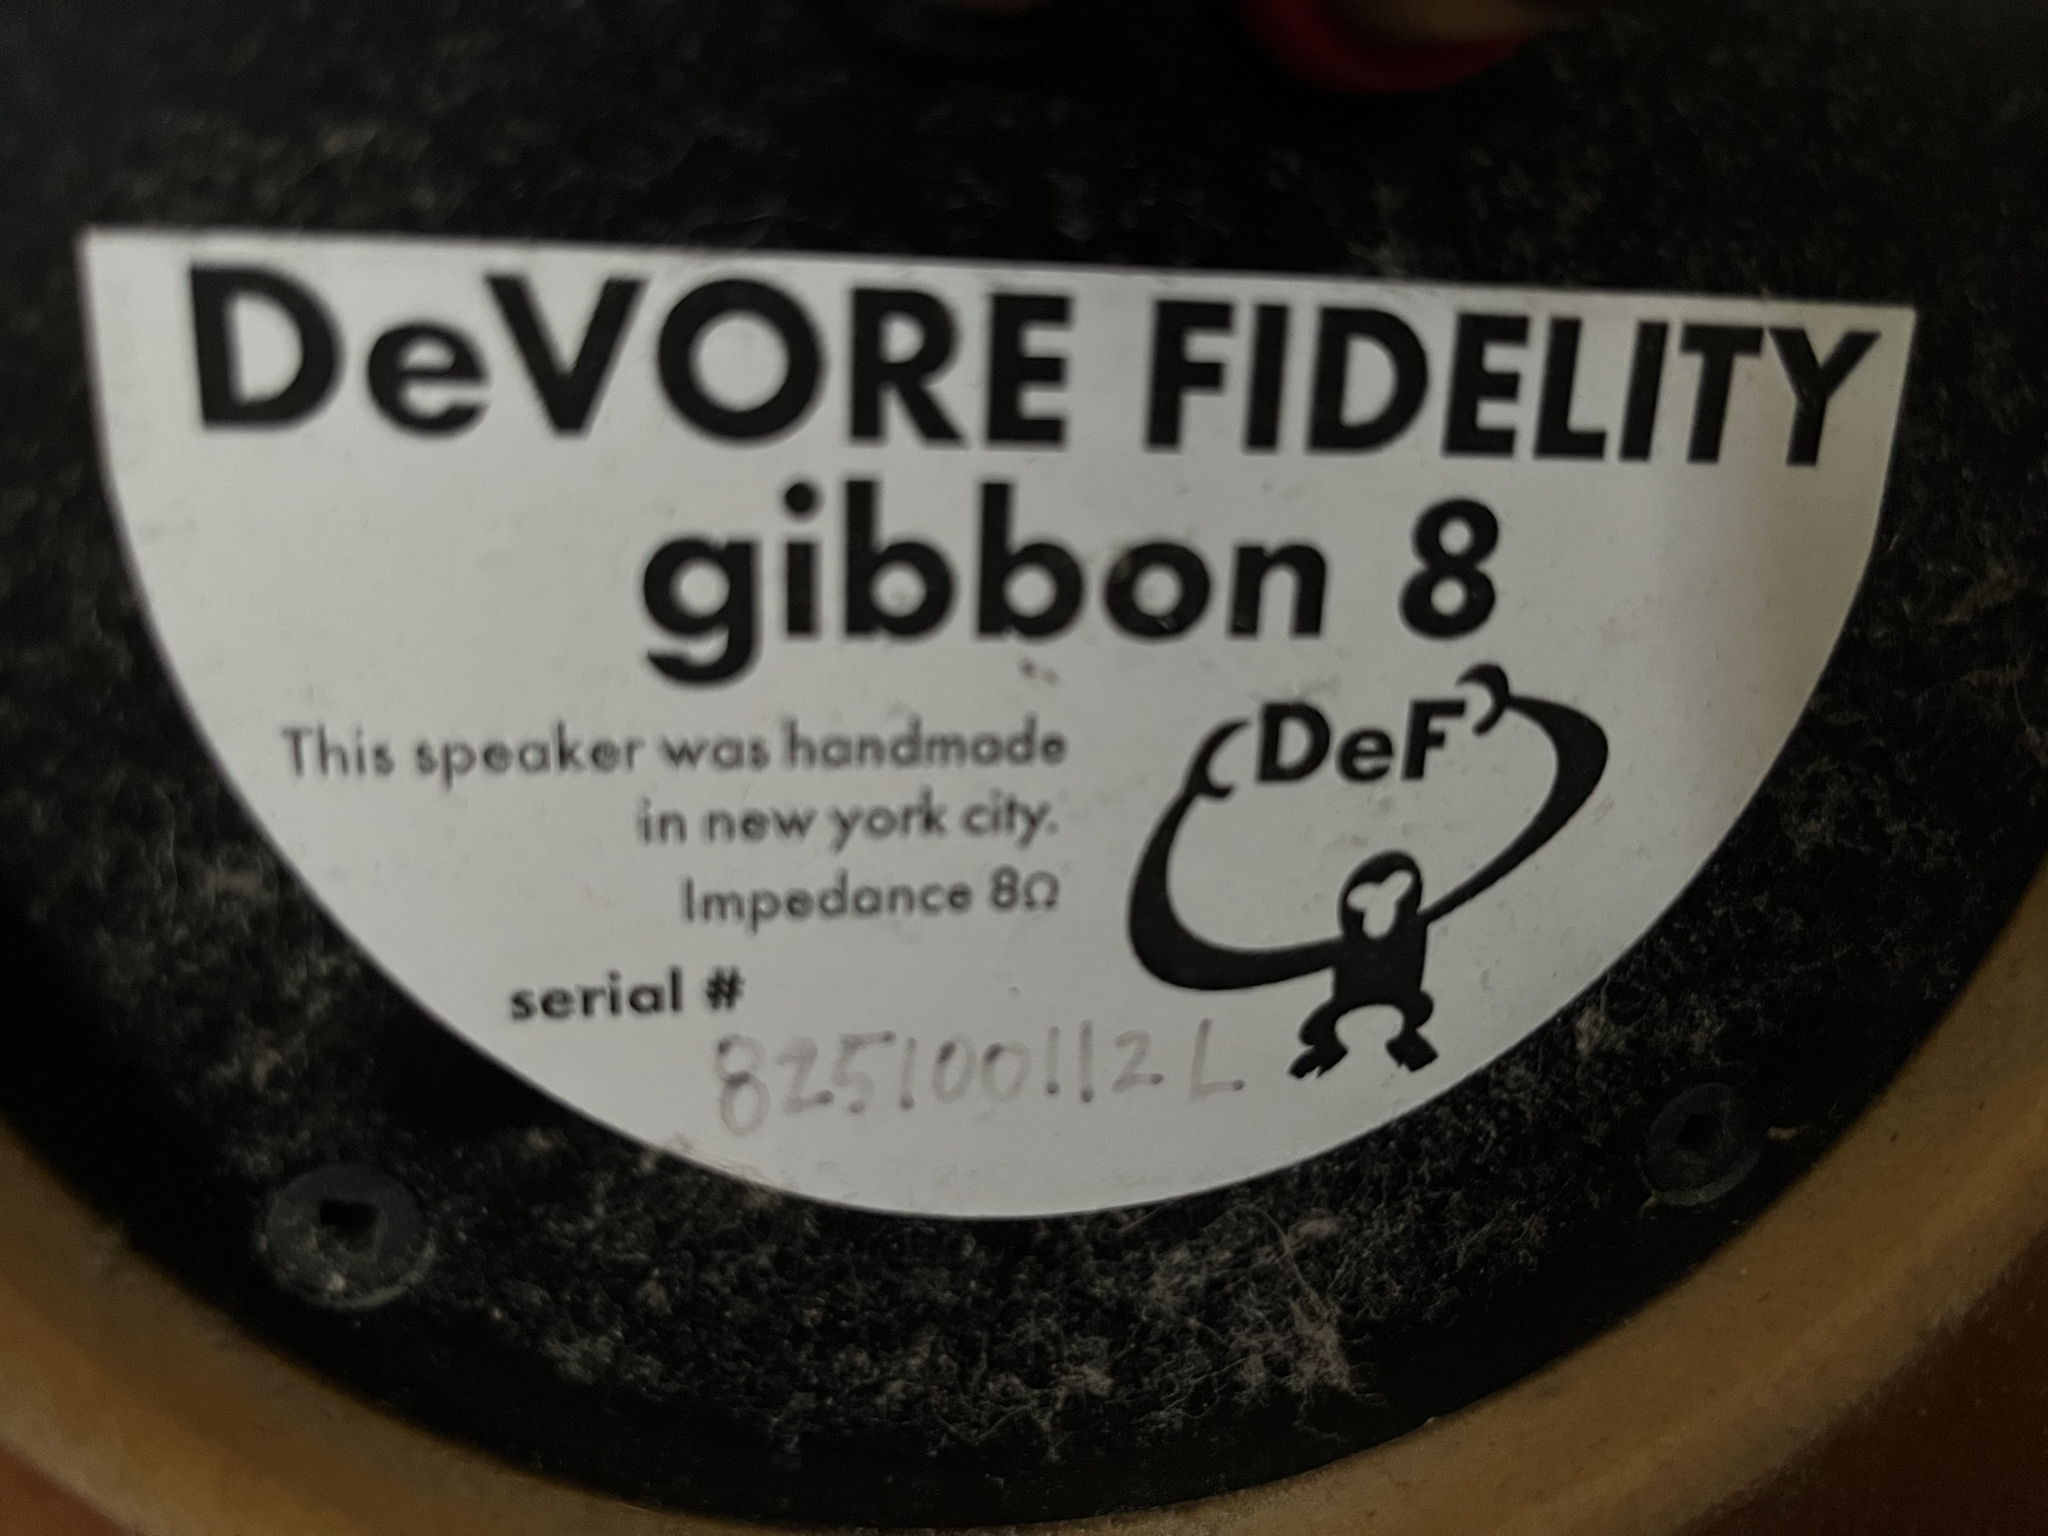 DeVore Fidelity Gibbon 8 2